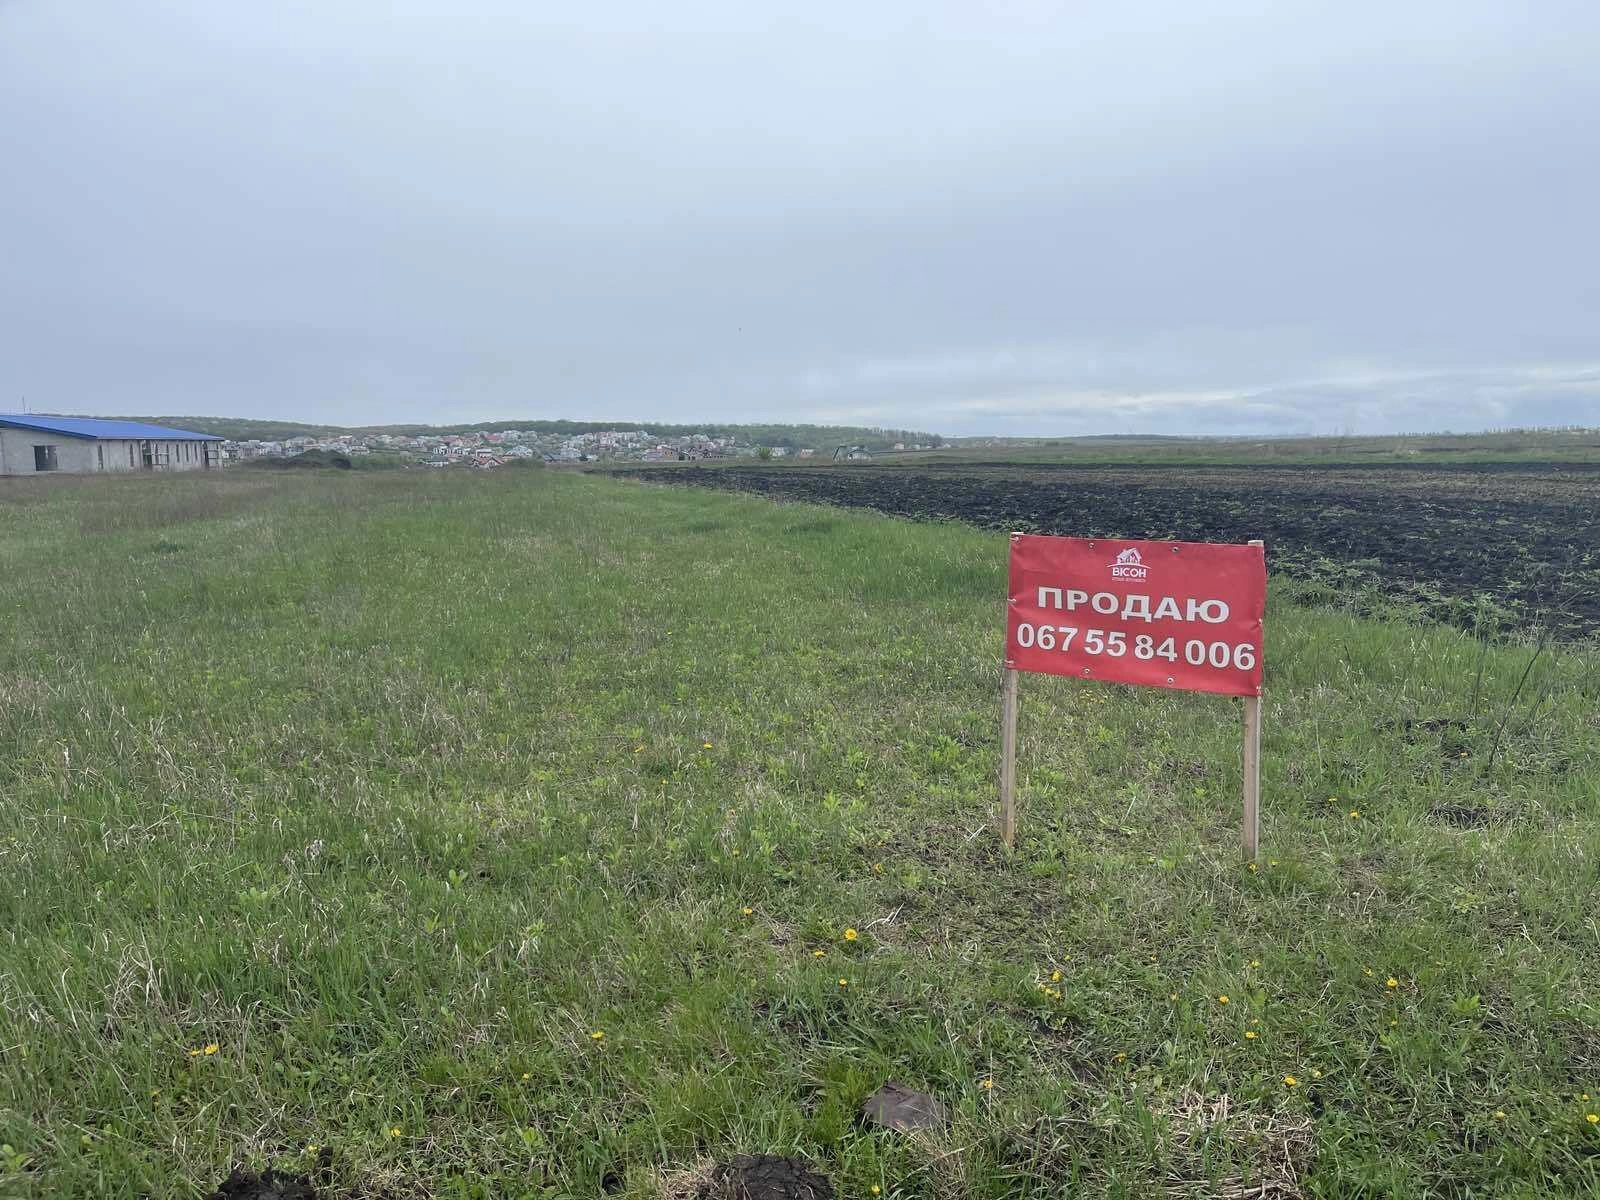 Land for sale for residential construction. Podhorodnoe. 